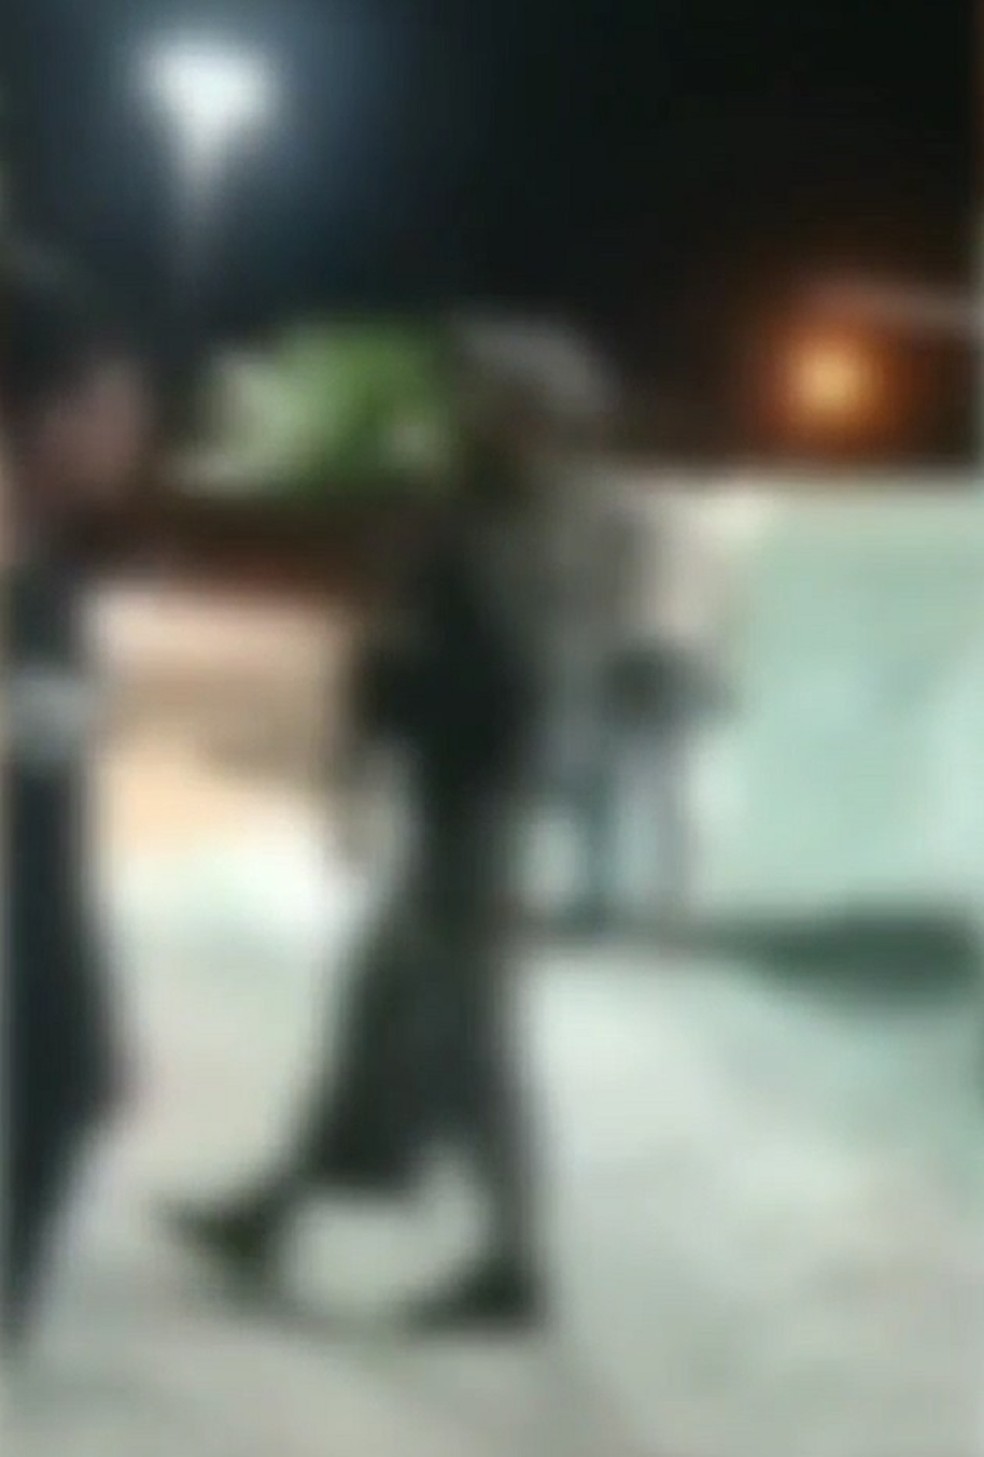 Policial foi filmado agredindo artista em batalha de hip hop na Zona Norte de Natal — Foto: Reprodução